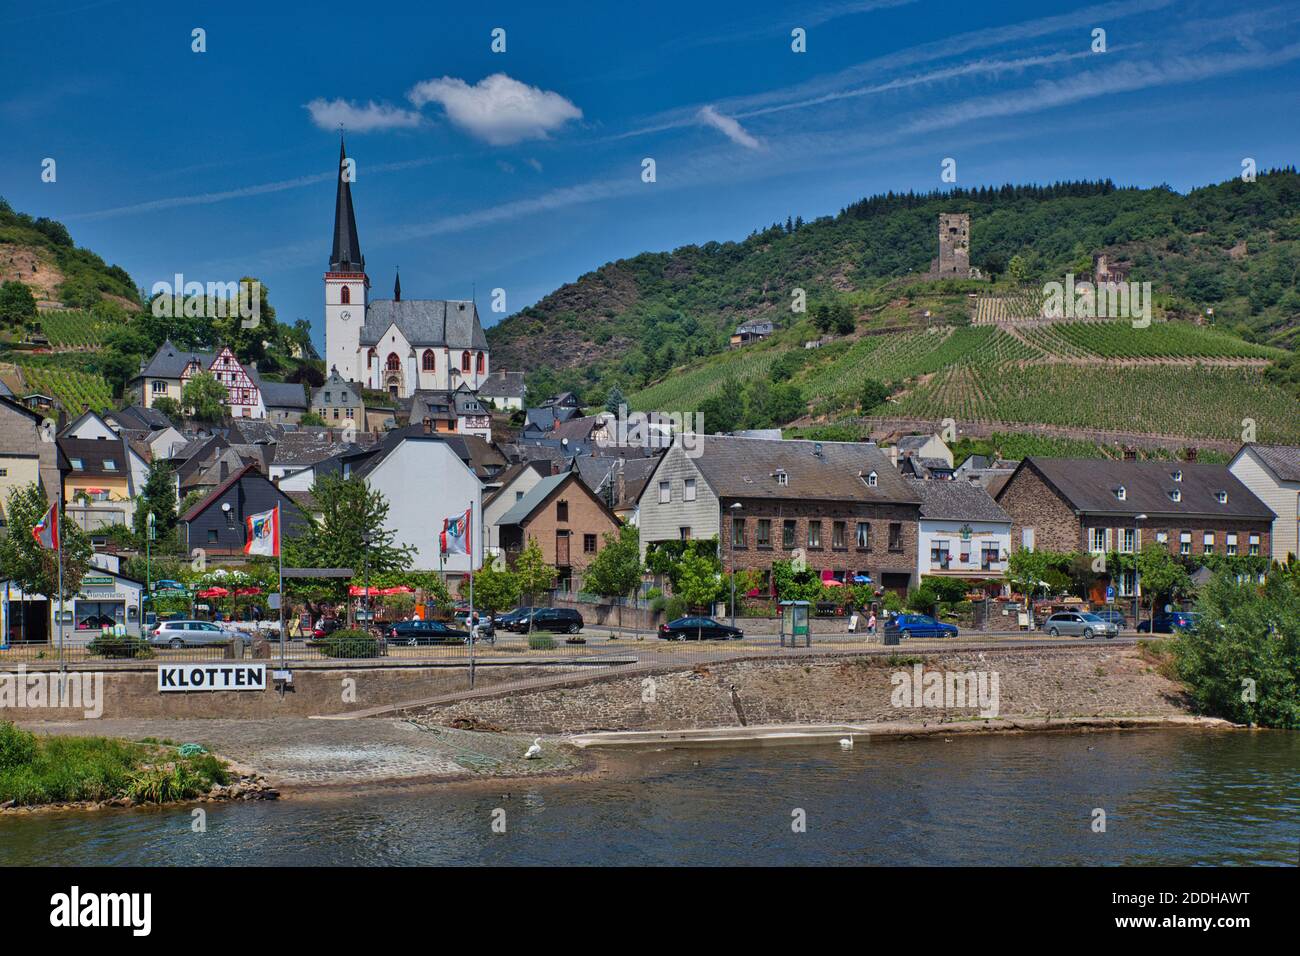 Ein Stadtbild vom Rhein aus gesehen, mit Gebäuden aller Größen und einer weißen Kirche mit Turm hoch auf einem Hügel im Hintergrund Stockfoto